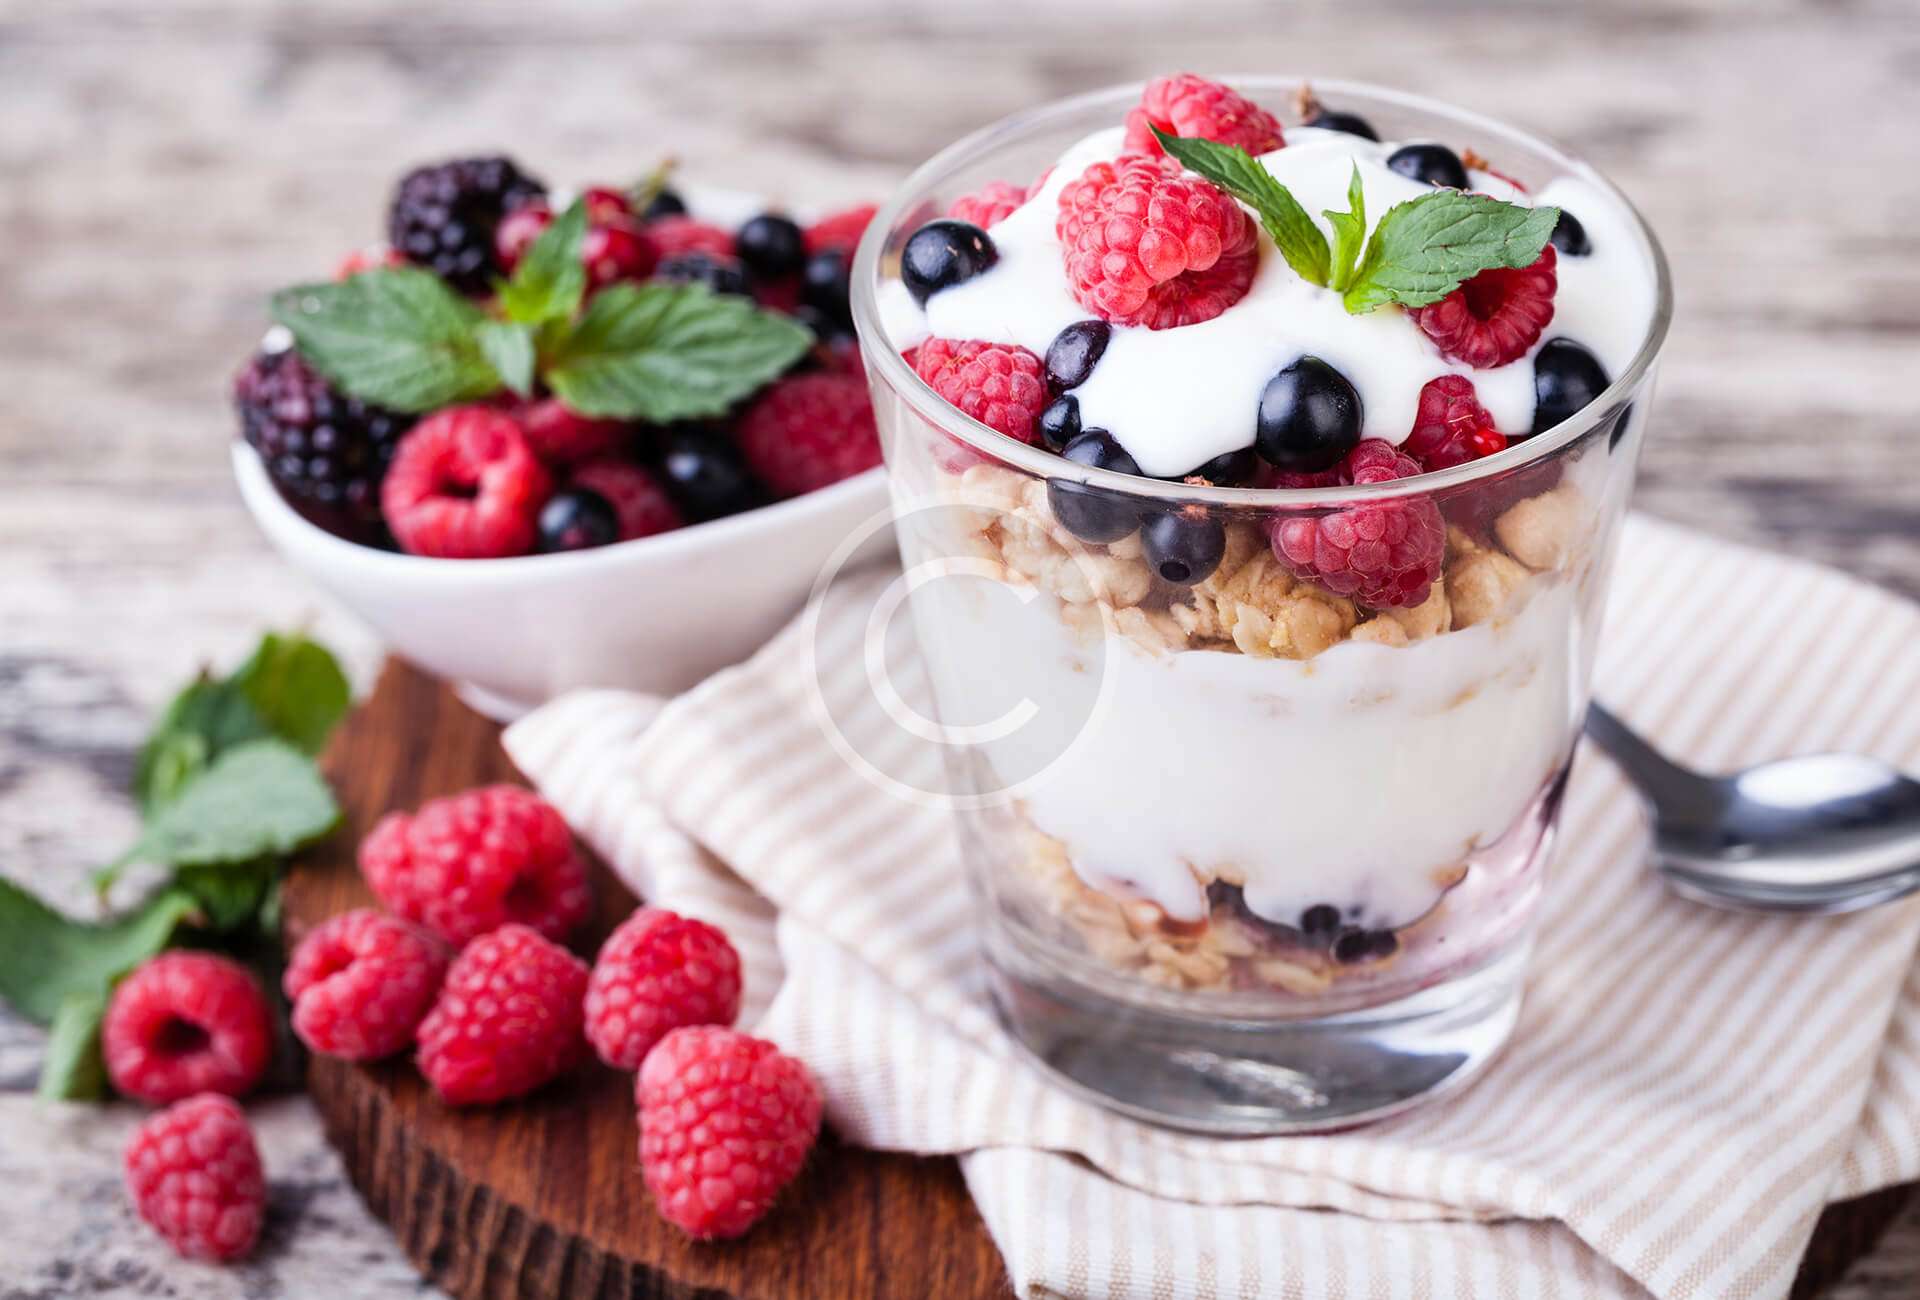 Healthy Yogurt With Muesli and Berries